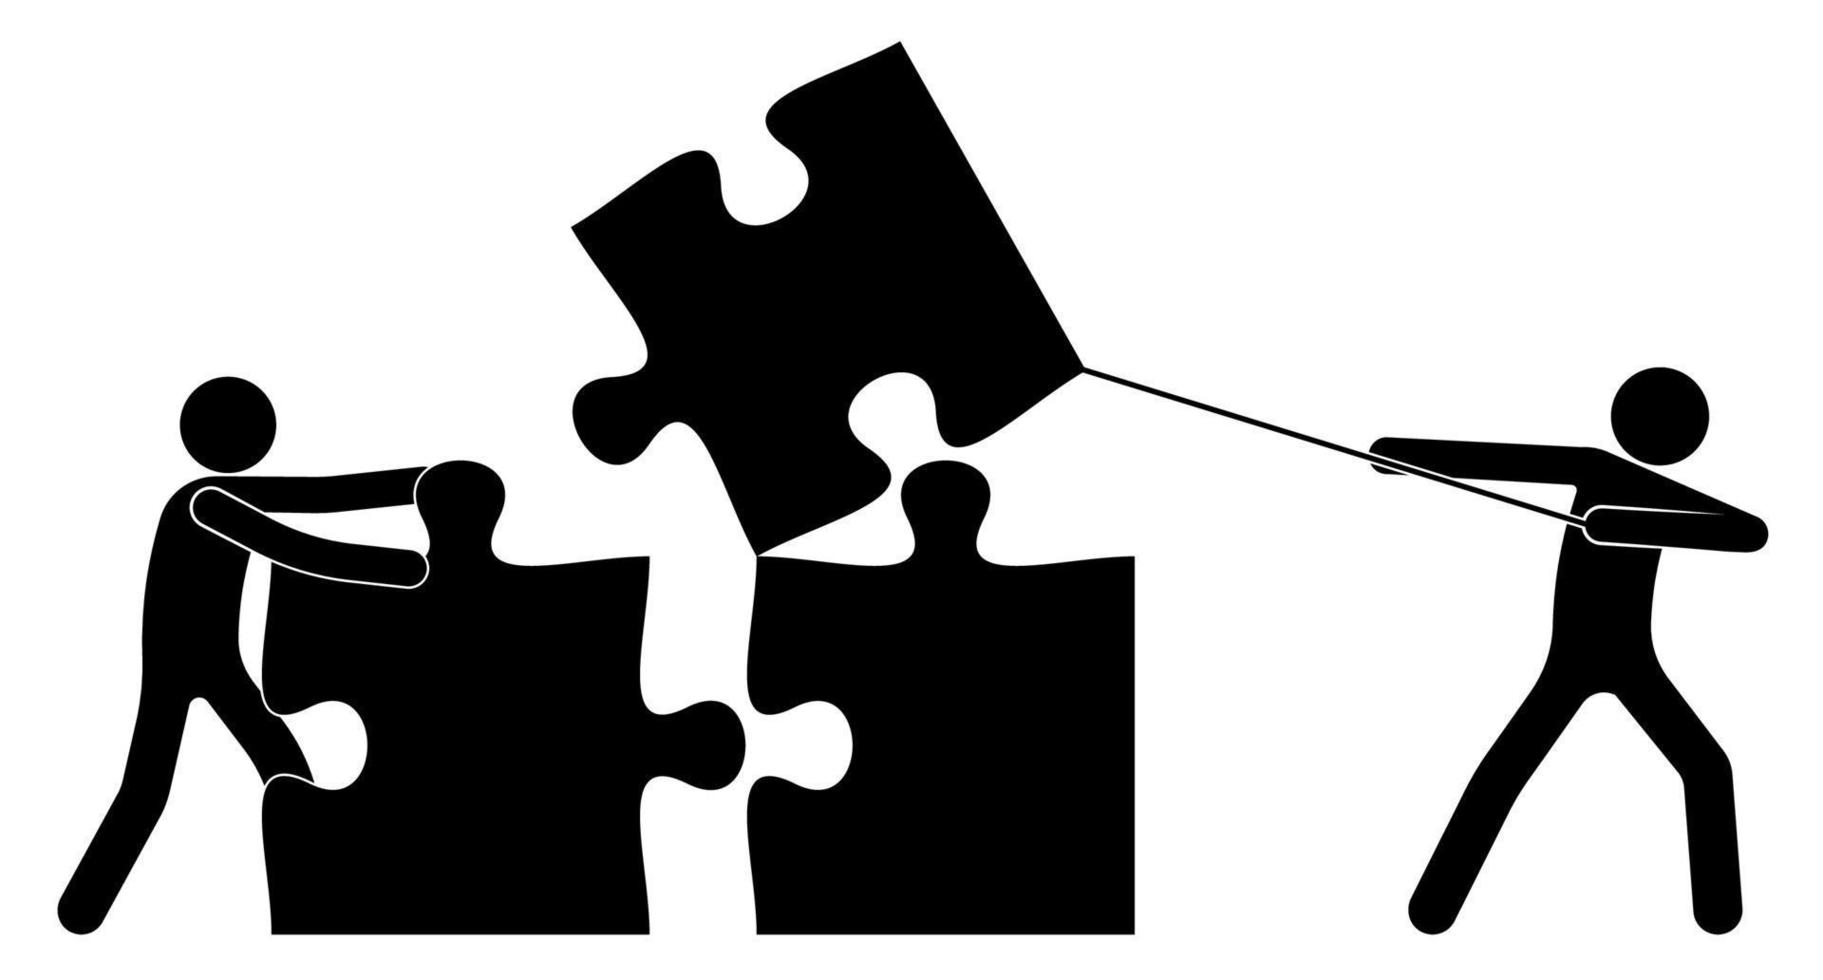 trabajo en equipo. dos personas, figura de palo construida junto con piezas de rompecabezas. Resolver un problema común mediante esfuerzos conjuntos. trabajo de personas en equipo para un resultado común. vector